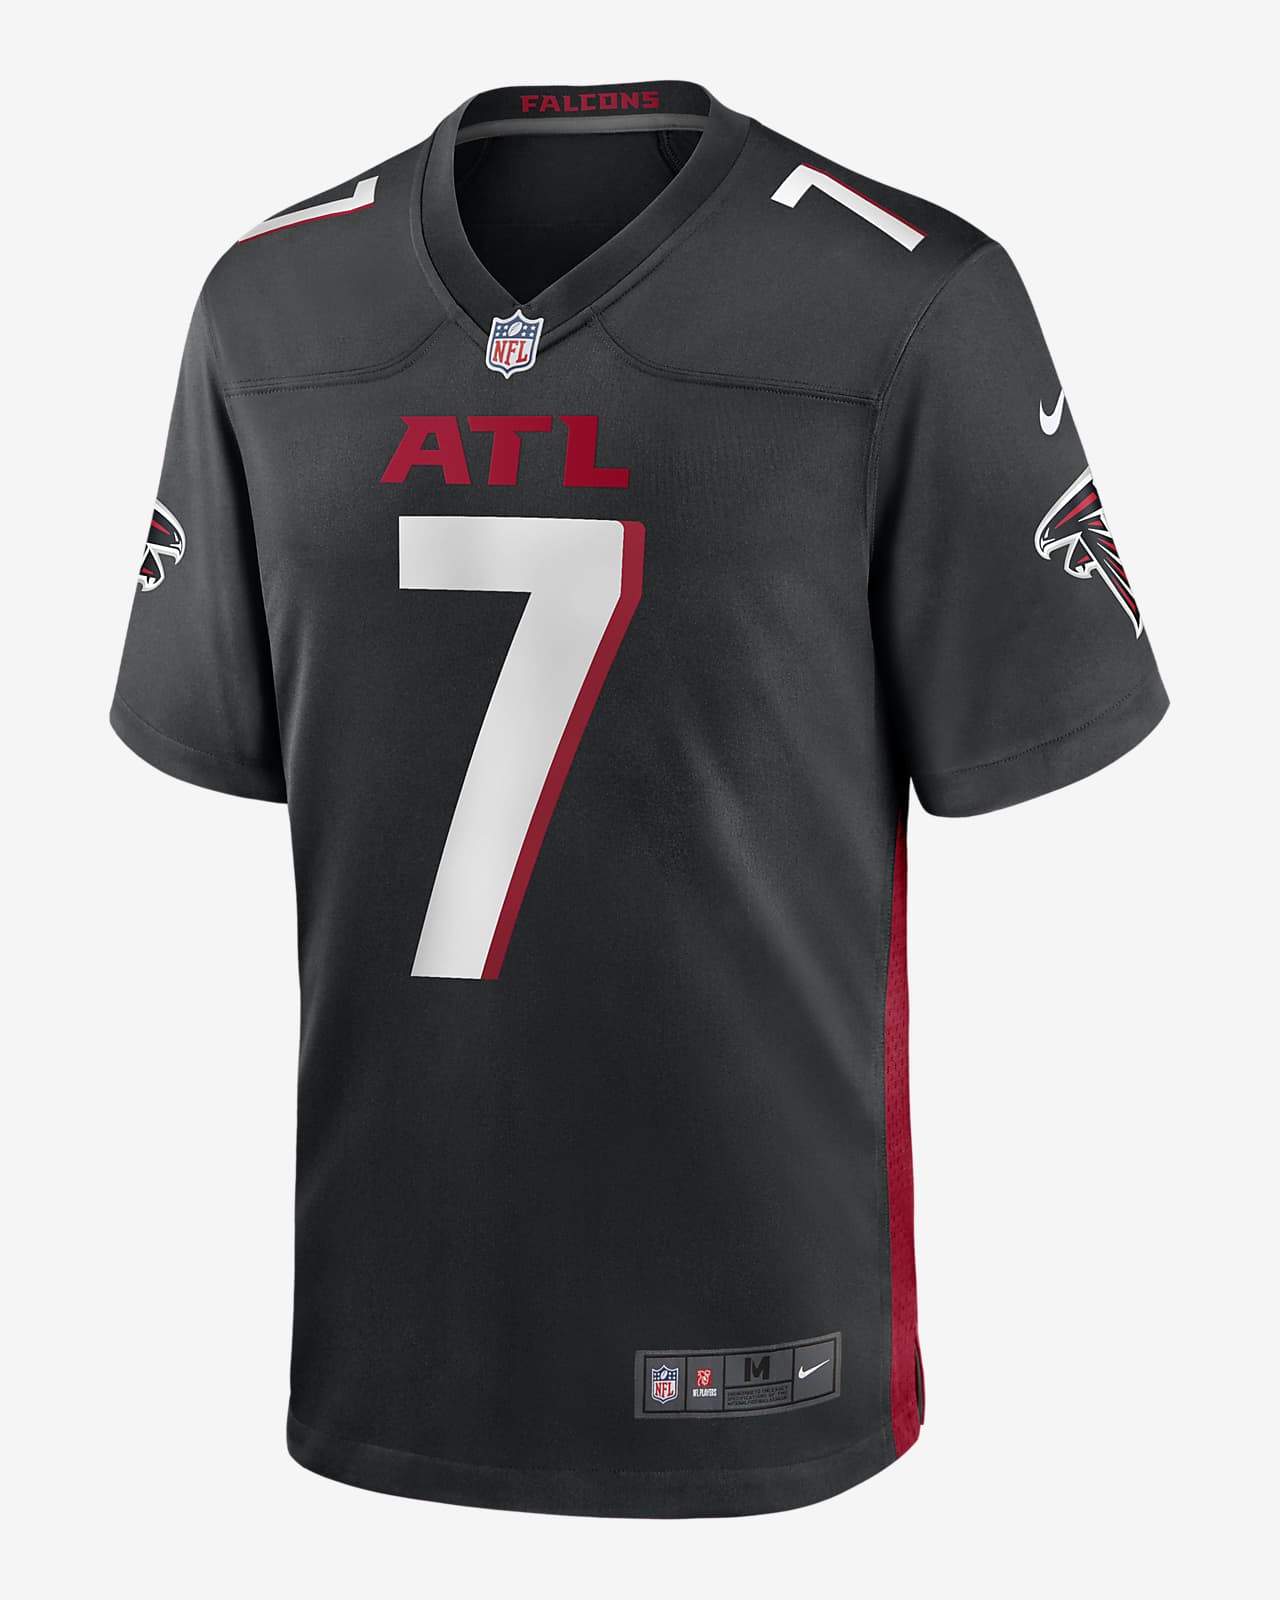 Jersey de fútbol americano Nike de la NFL Game para hombre Bijan Robinson Atlanta Falcons